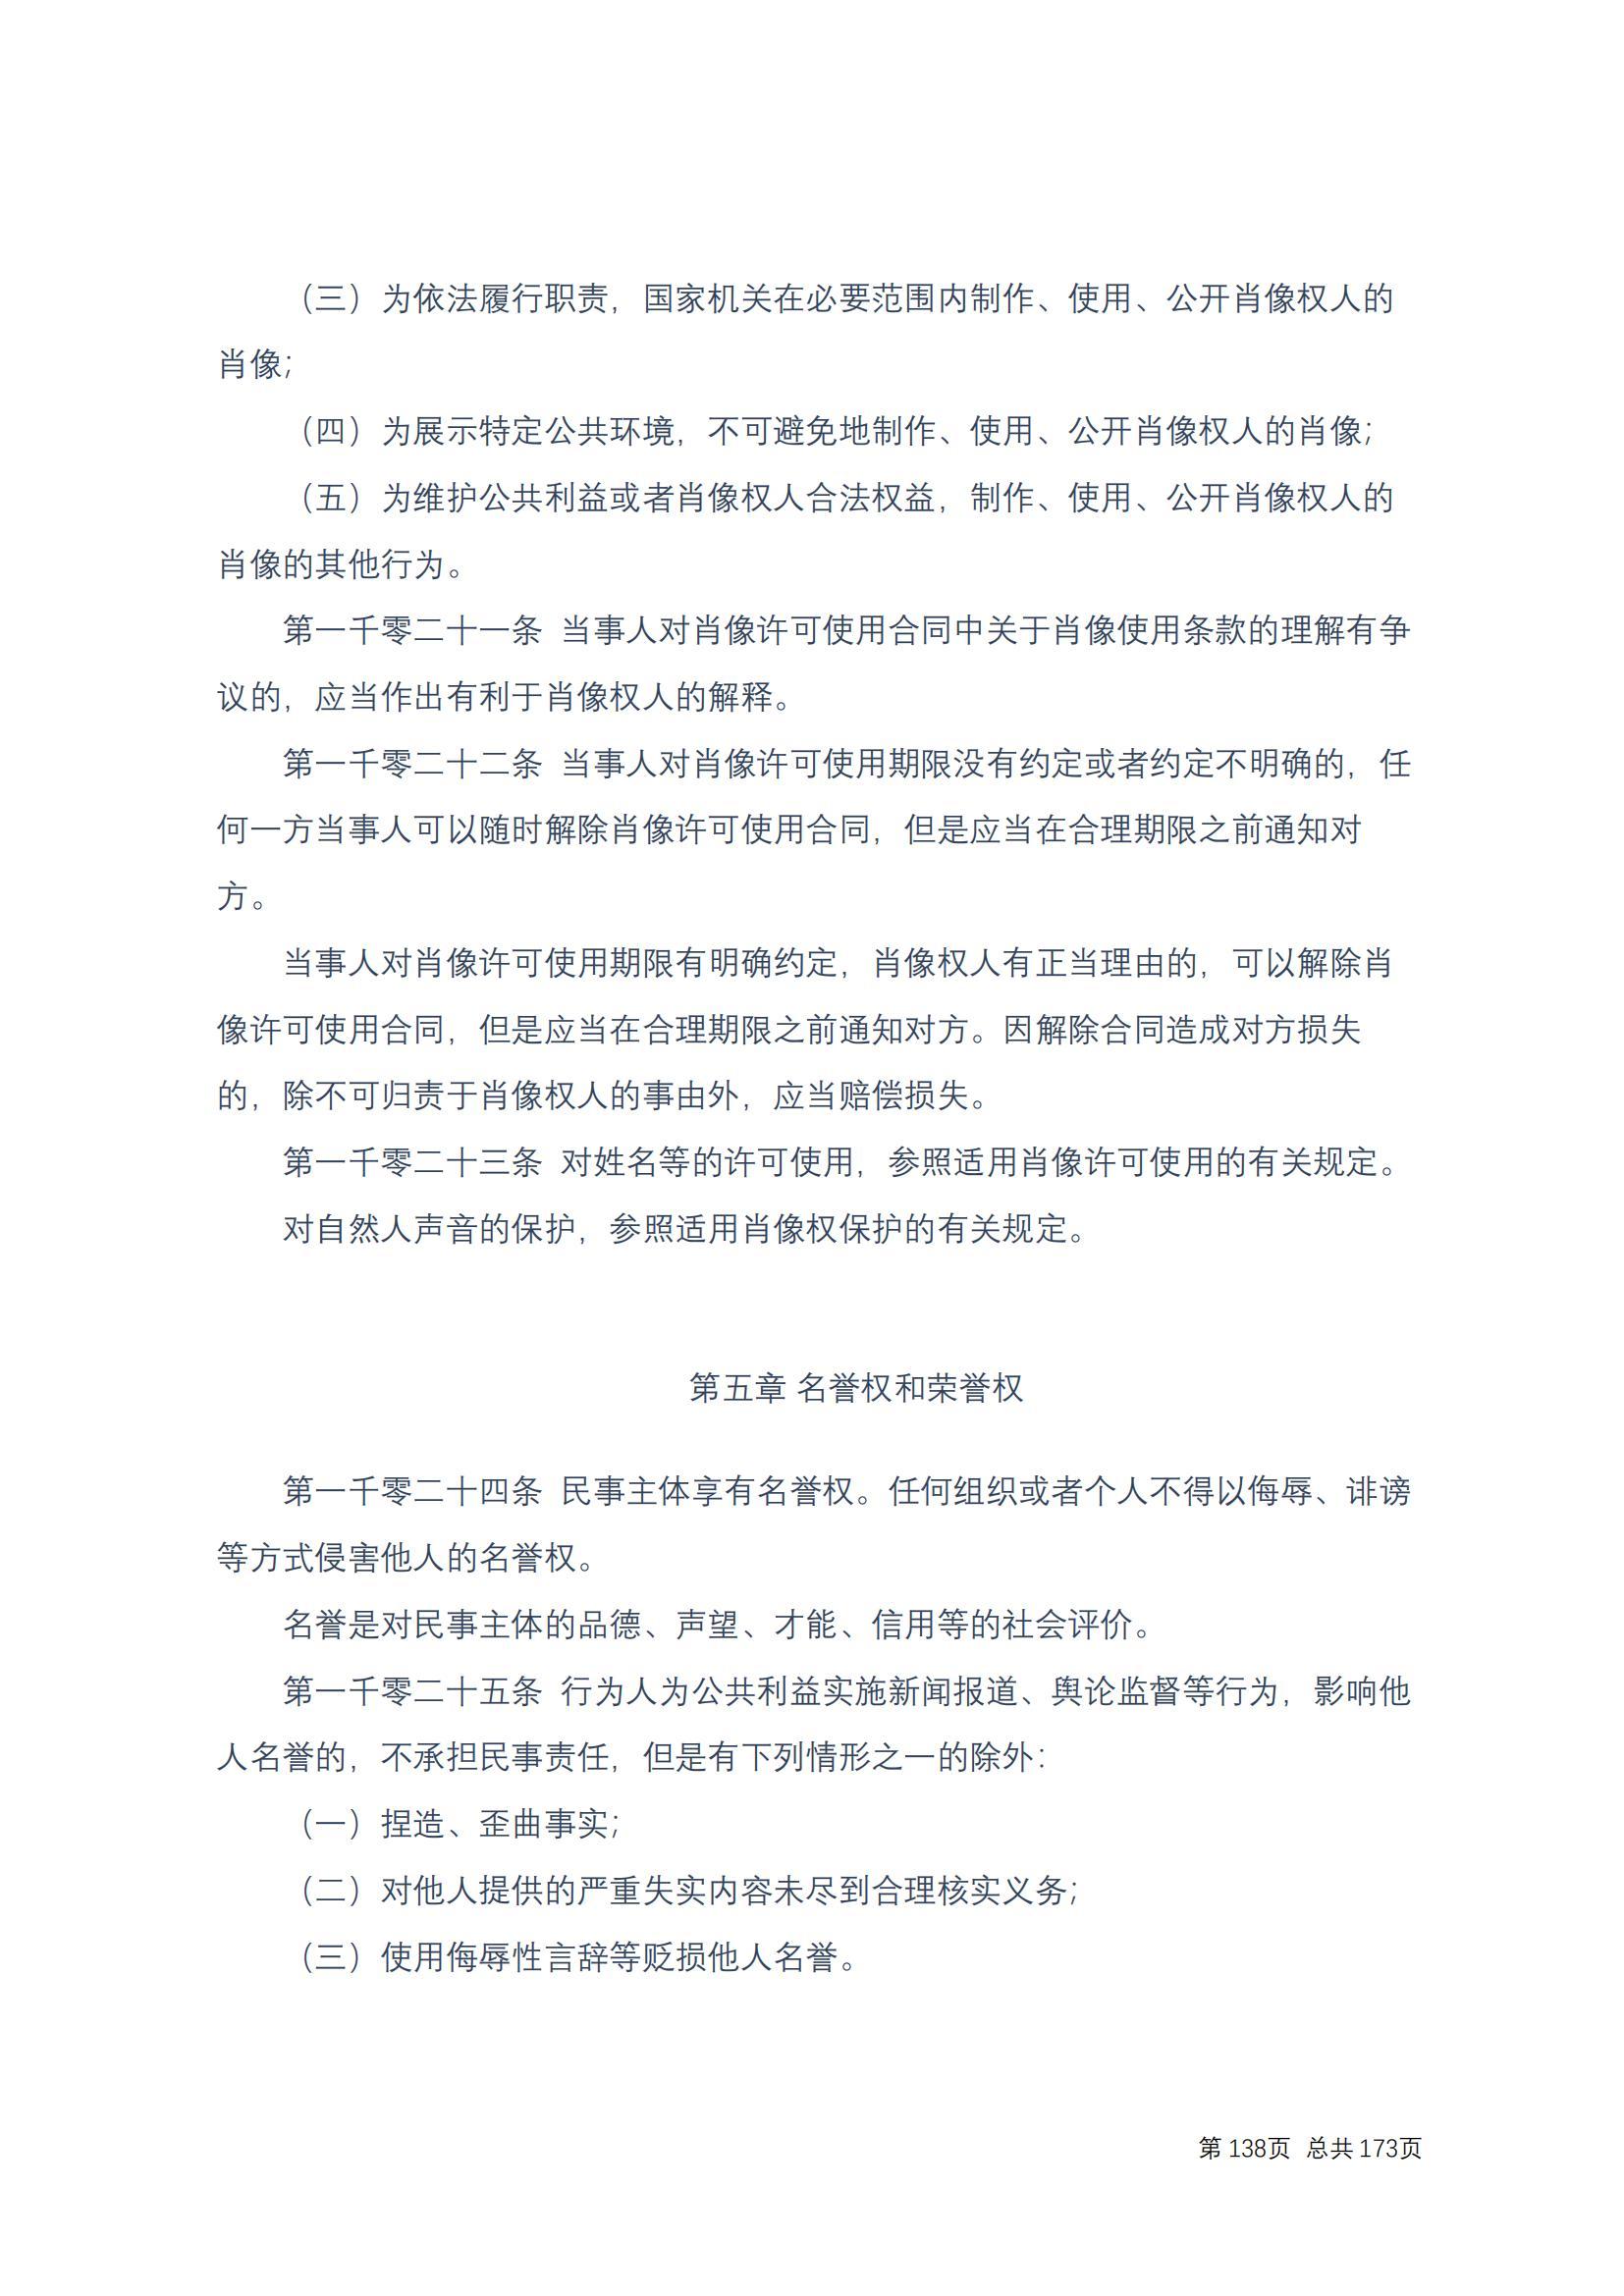 中华人民共和国民法典 修改过_137